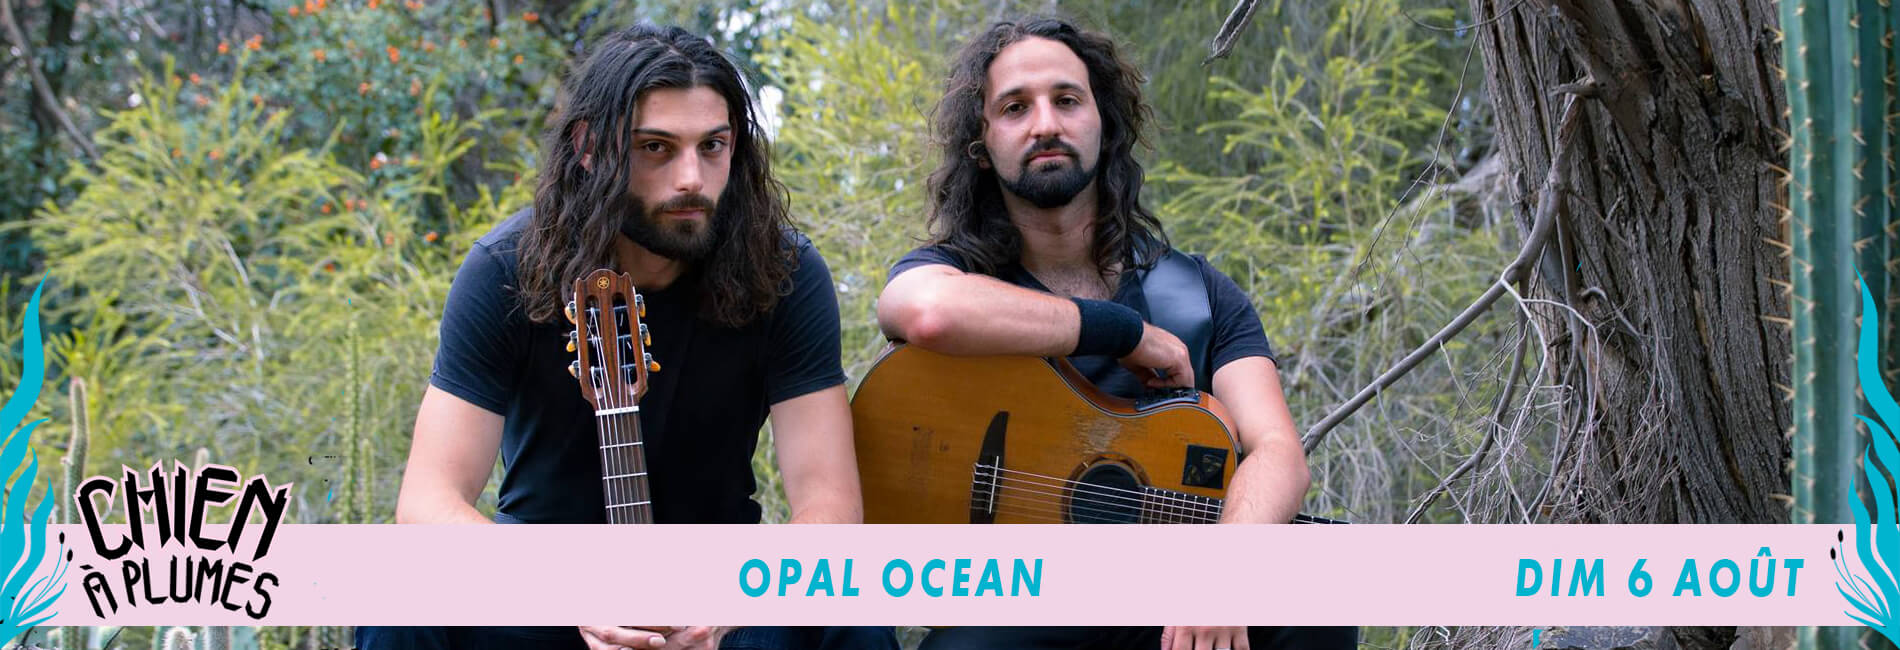 OPAL OCEAN_CHIENAPLUMES